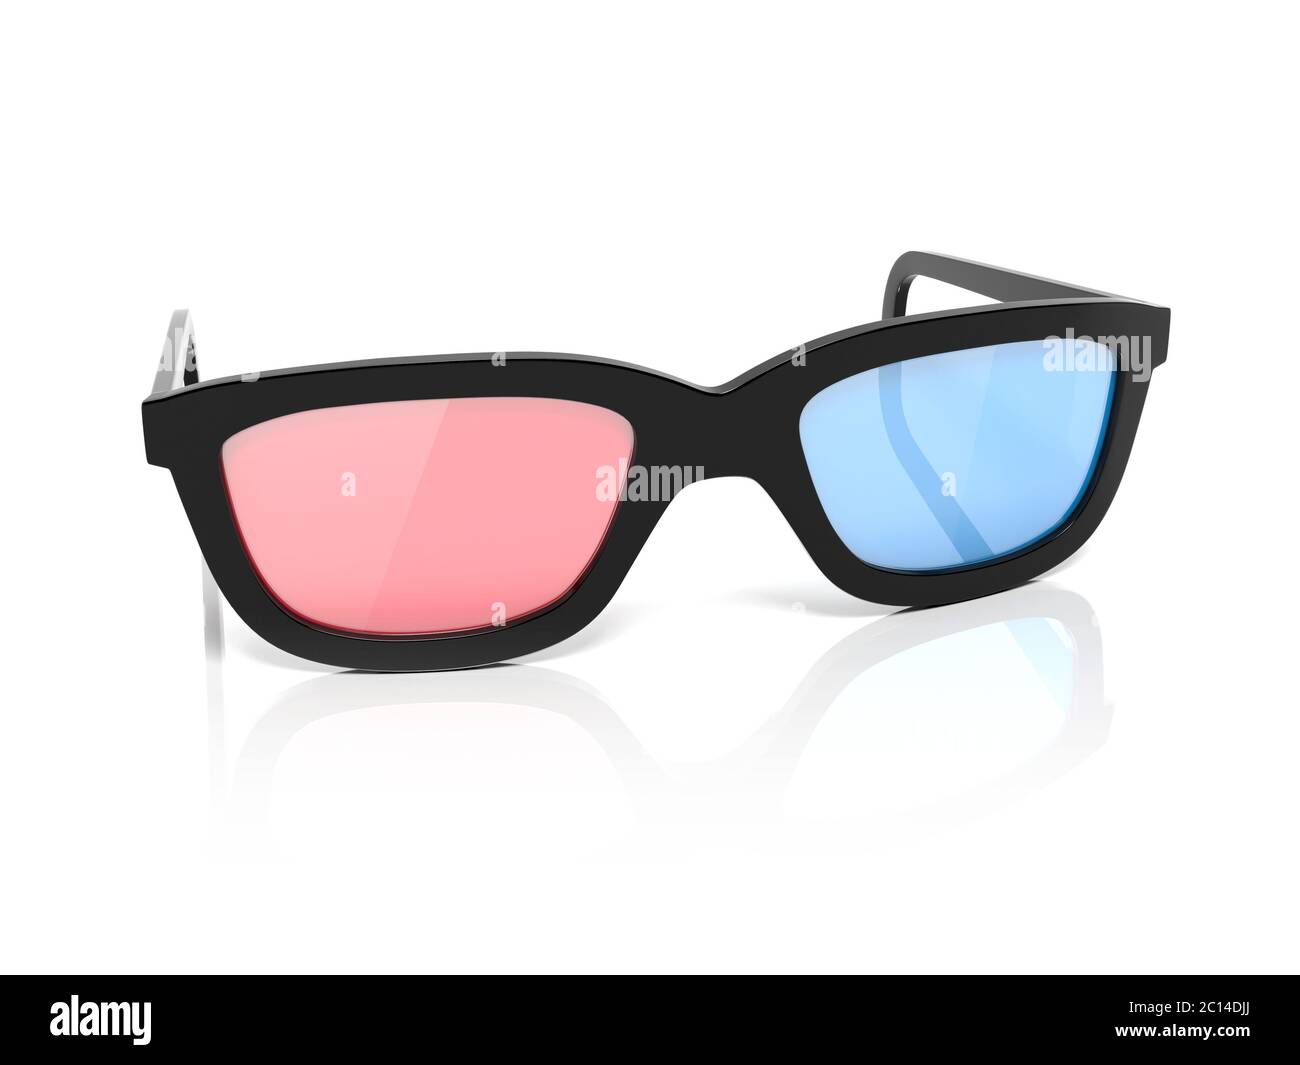 occhiali 3d. Occhiali rossi e blu per cinema. illustrazione del rendering 3d isolata su sfondo bianco Foto Stock